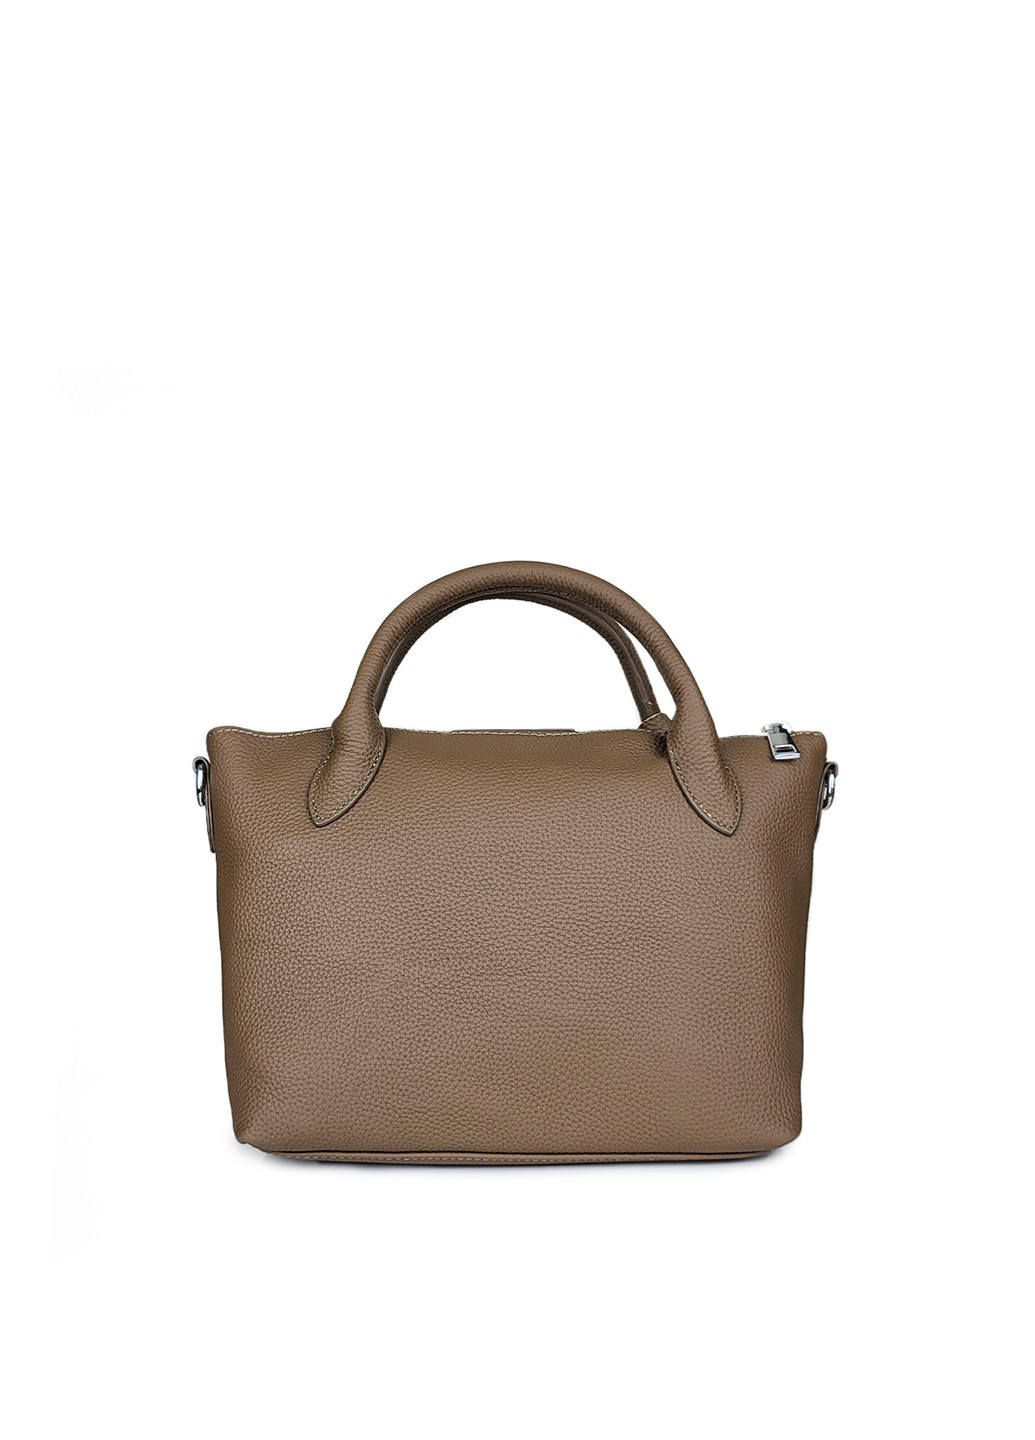 Кожаная женская сумка средняя коричневая,,7715 кор Fashion (276390288)